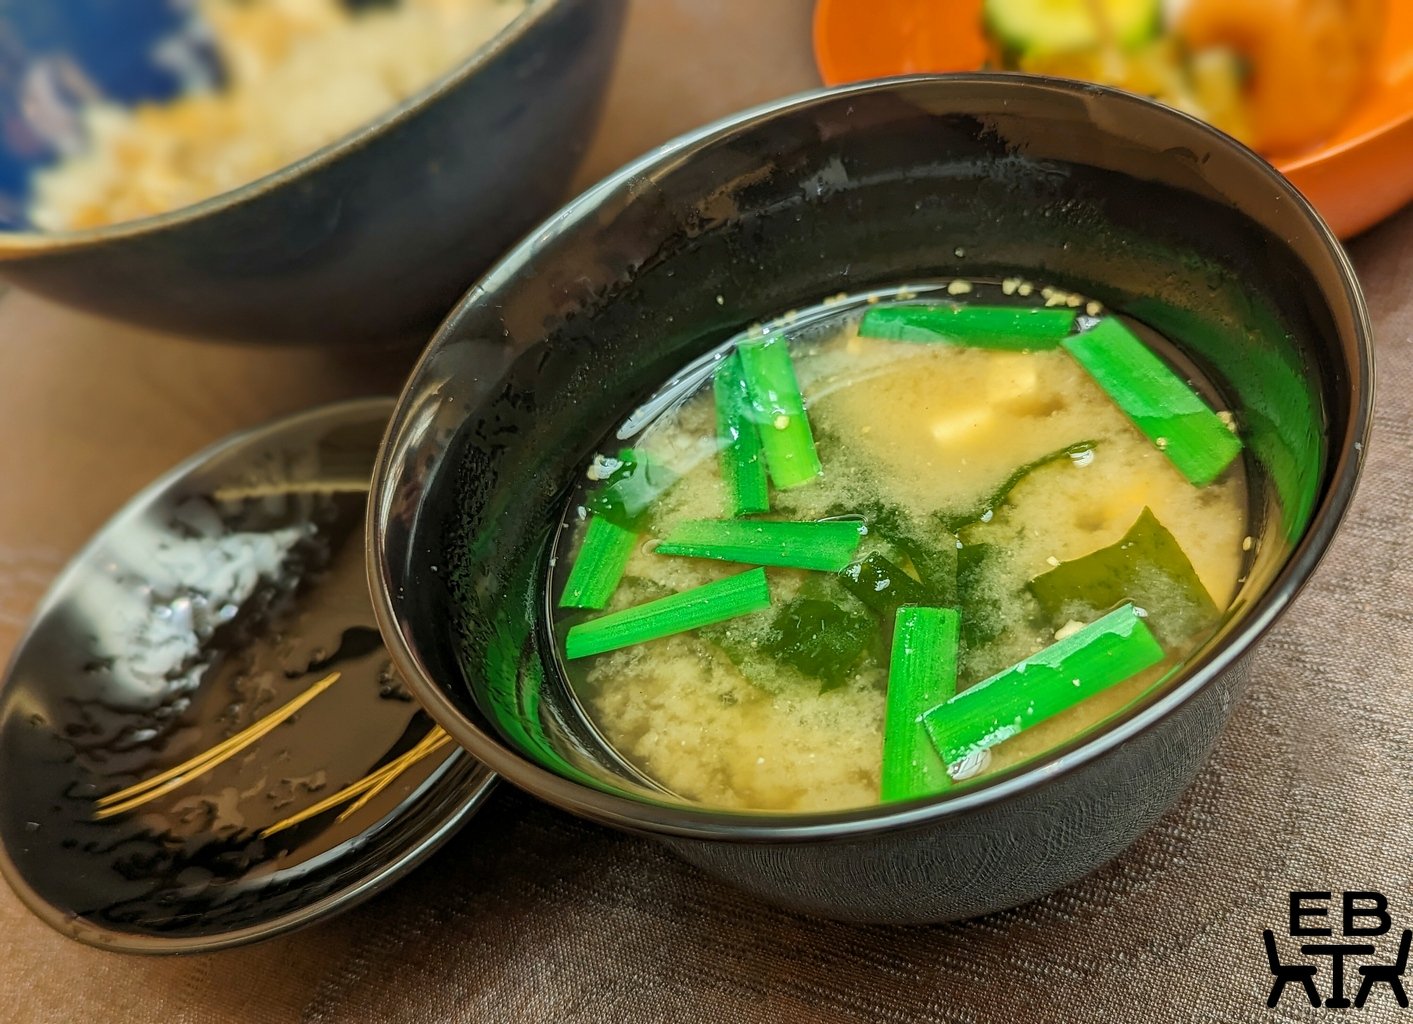 nakashima miso soup